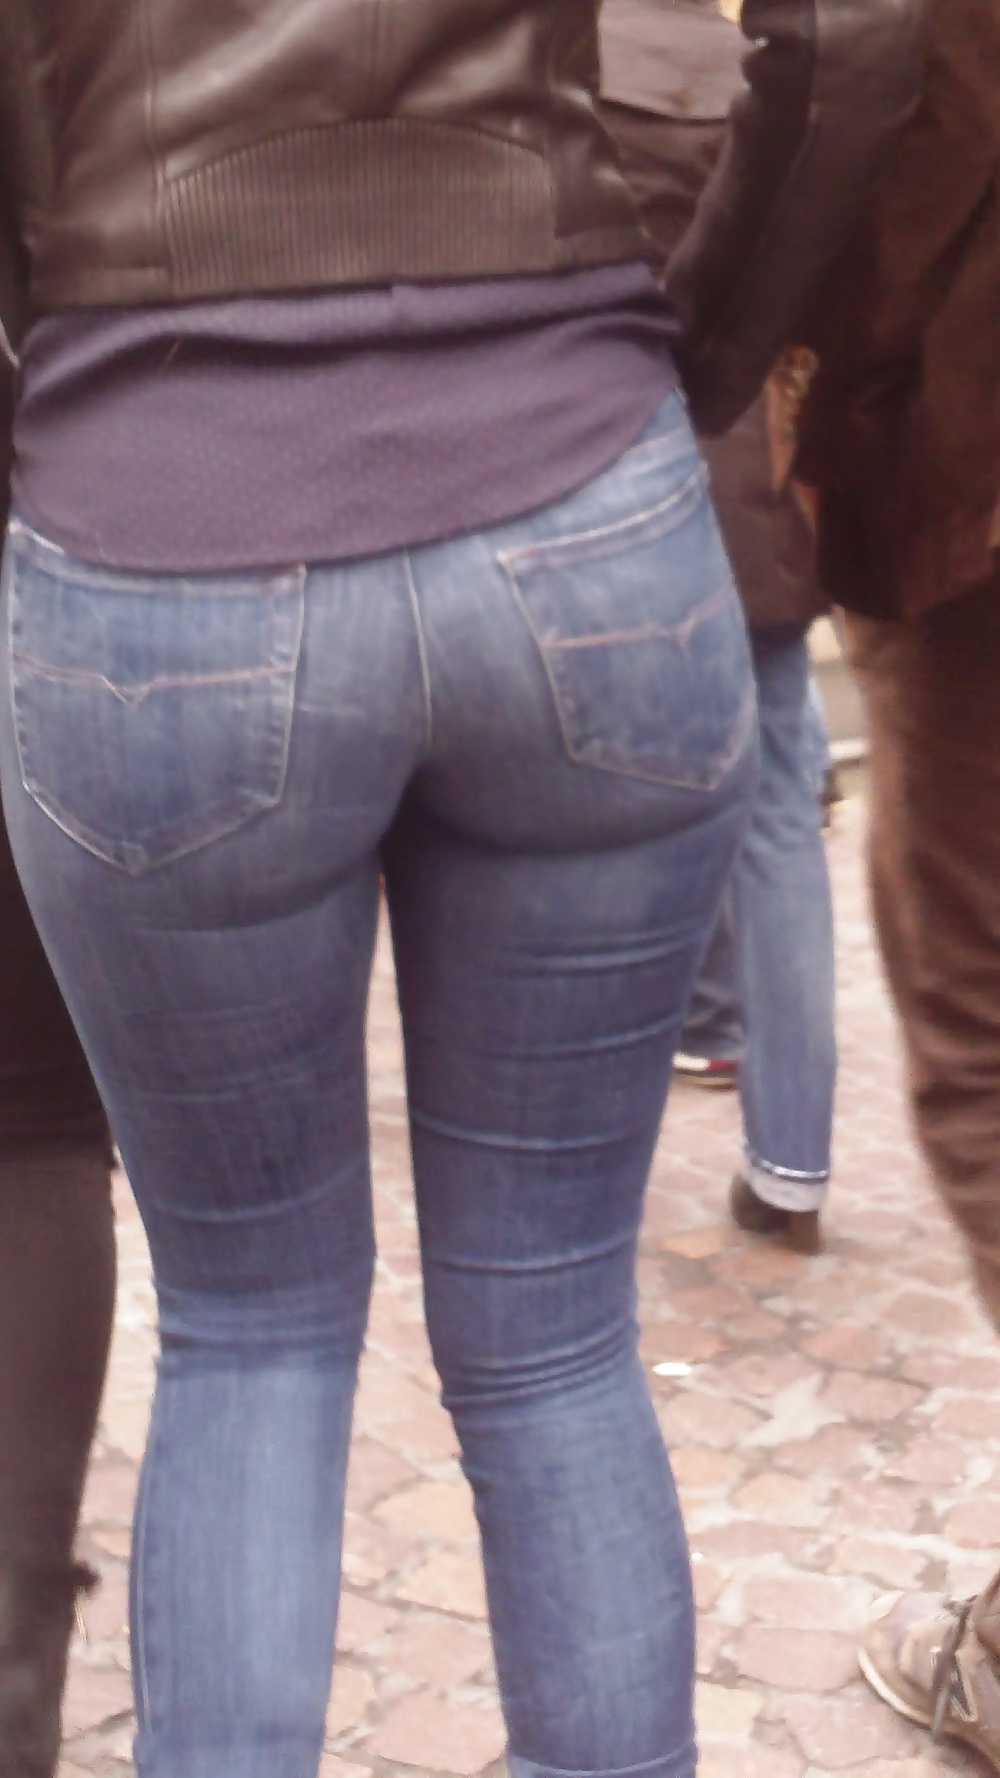 Popular teen girls ass & butt in jeans Part 6 #32010434